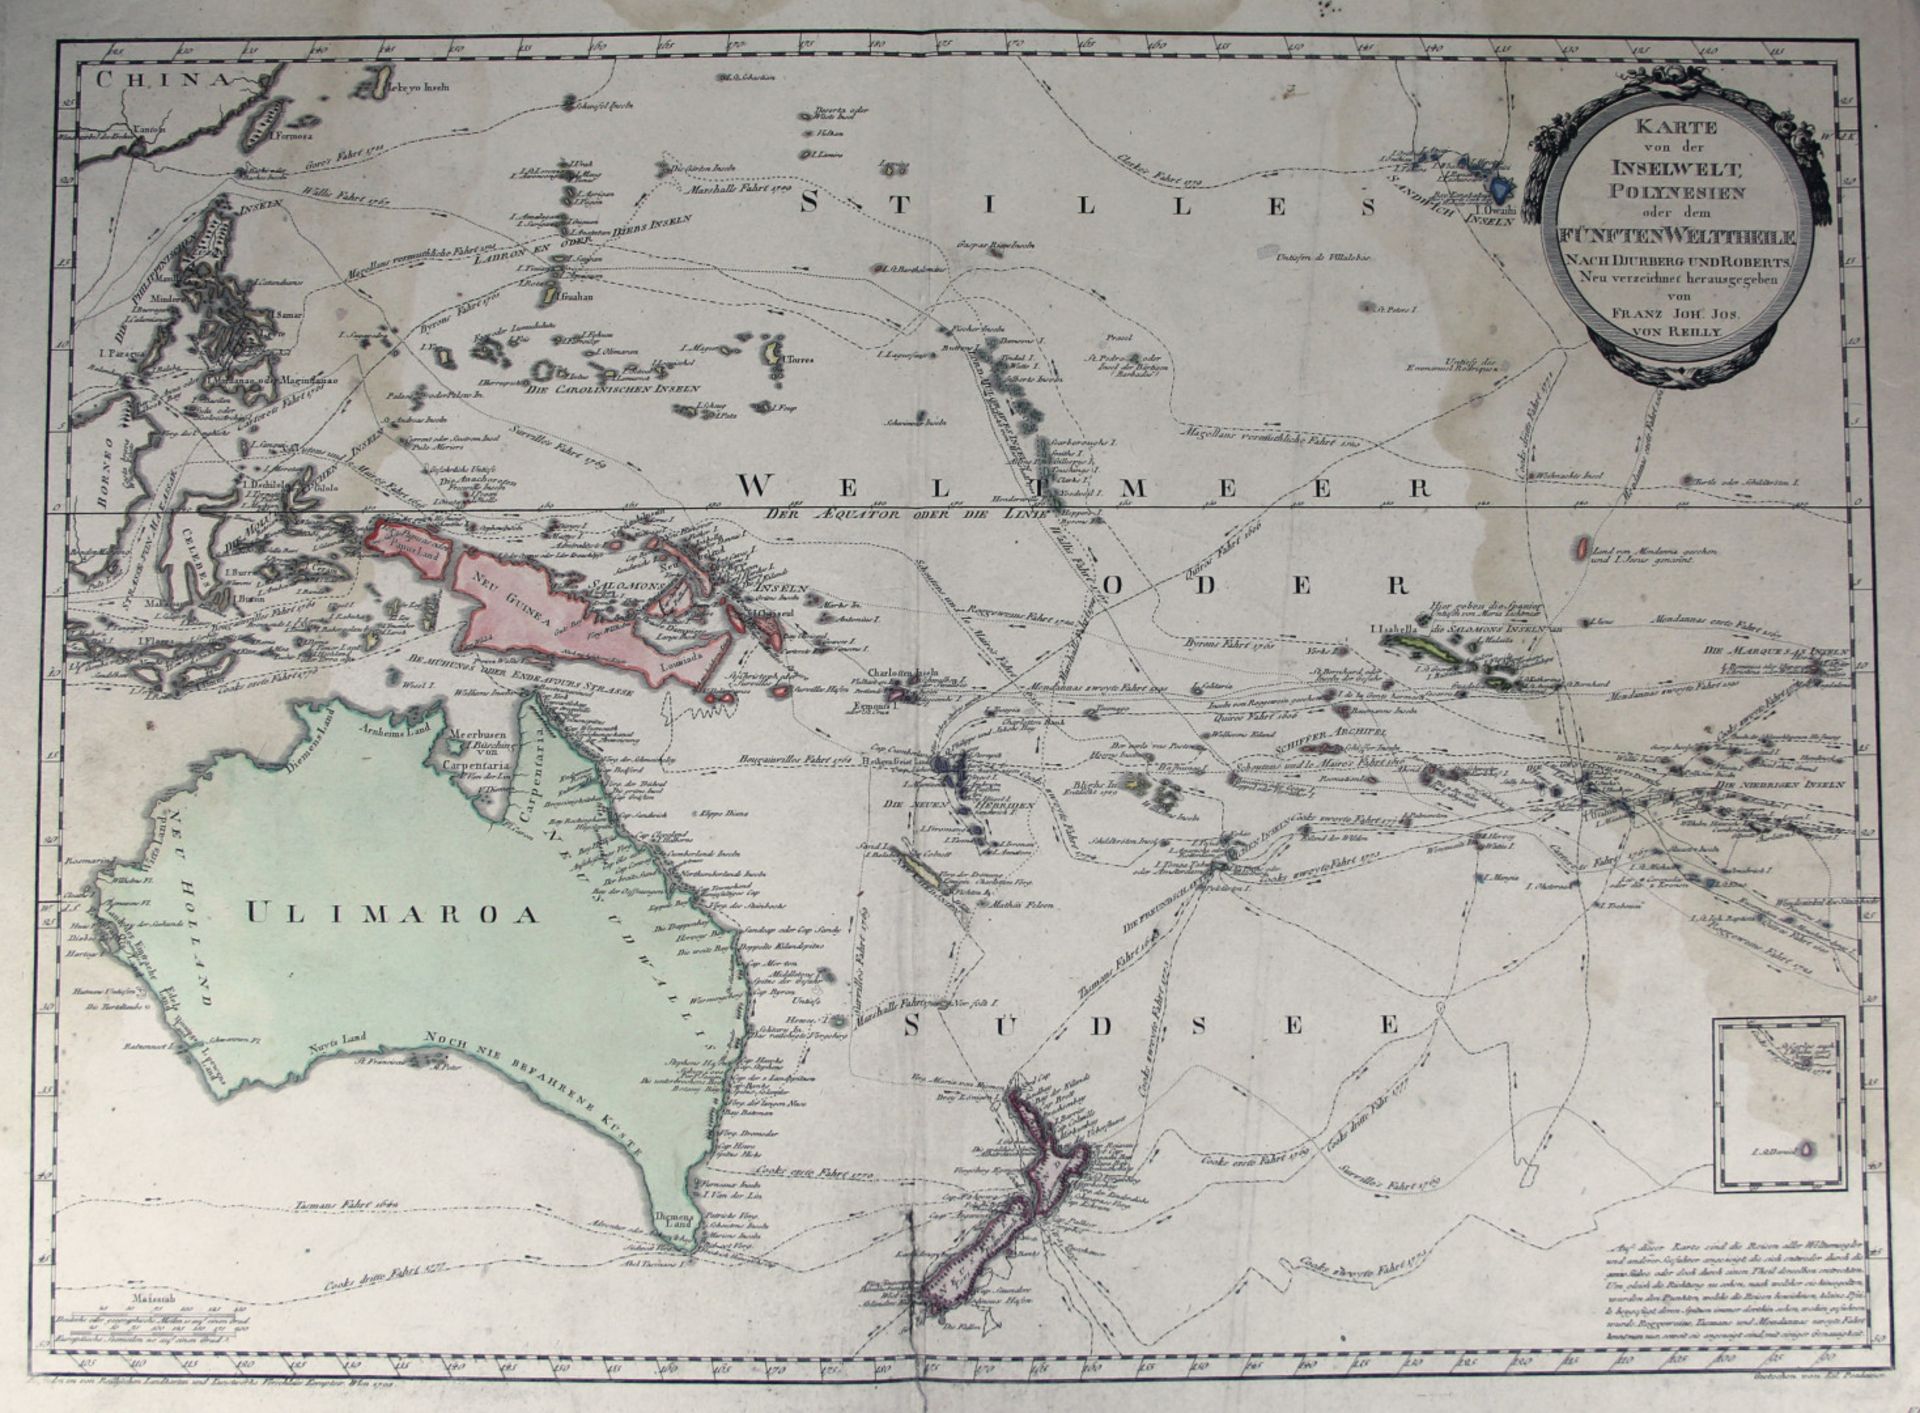 Polynesien. - "Karte von der Inselwelt, Polynesien oder dem fünften Welttheile. Nach Djurberg und R